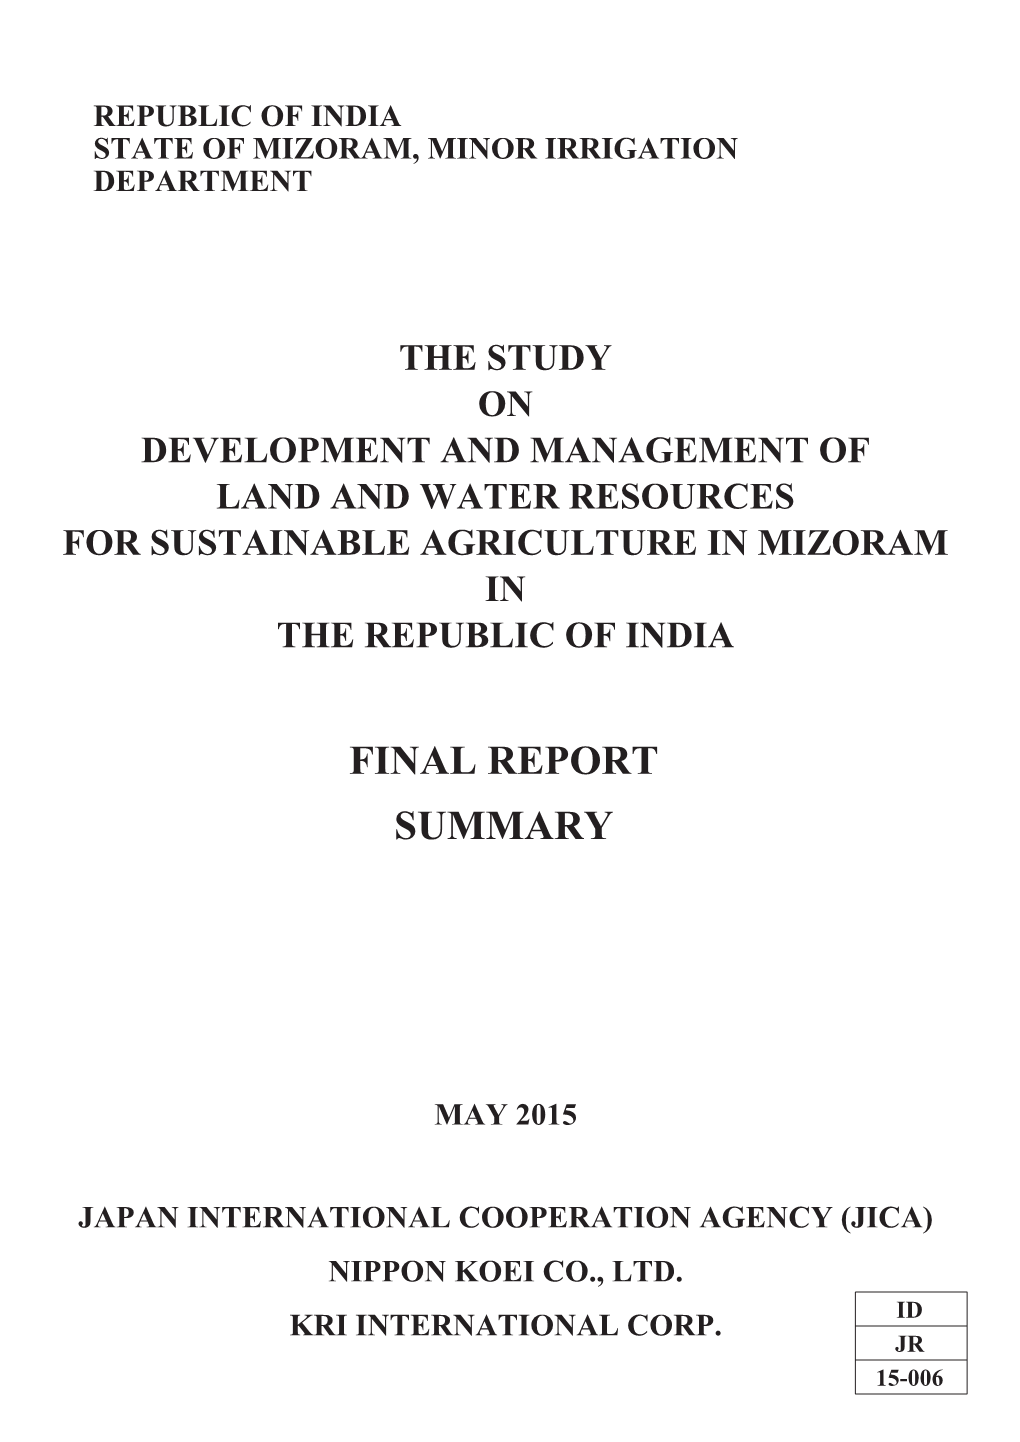 Republic of India State of Mizoram, Minor Irrigation Department